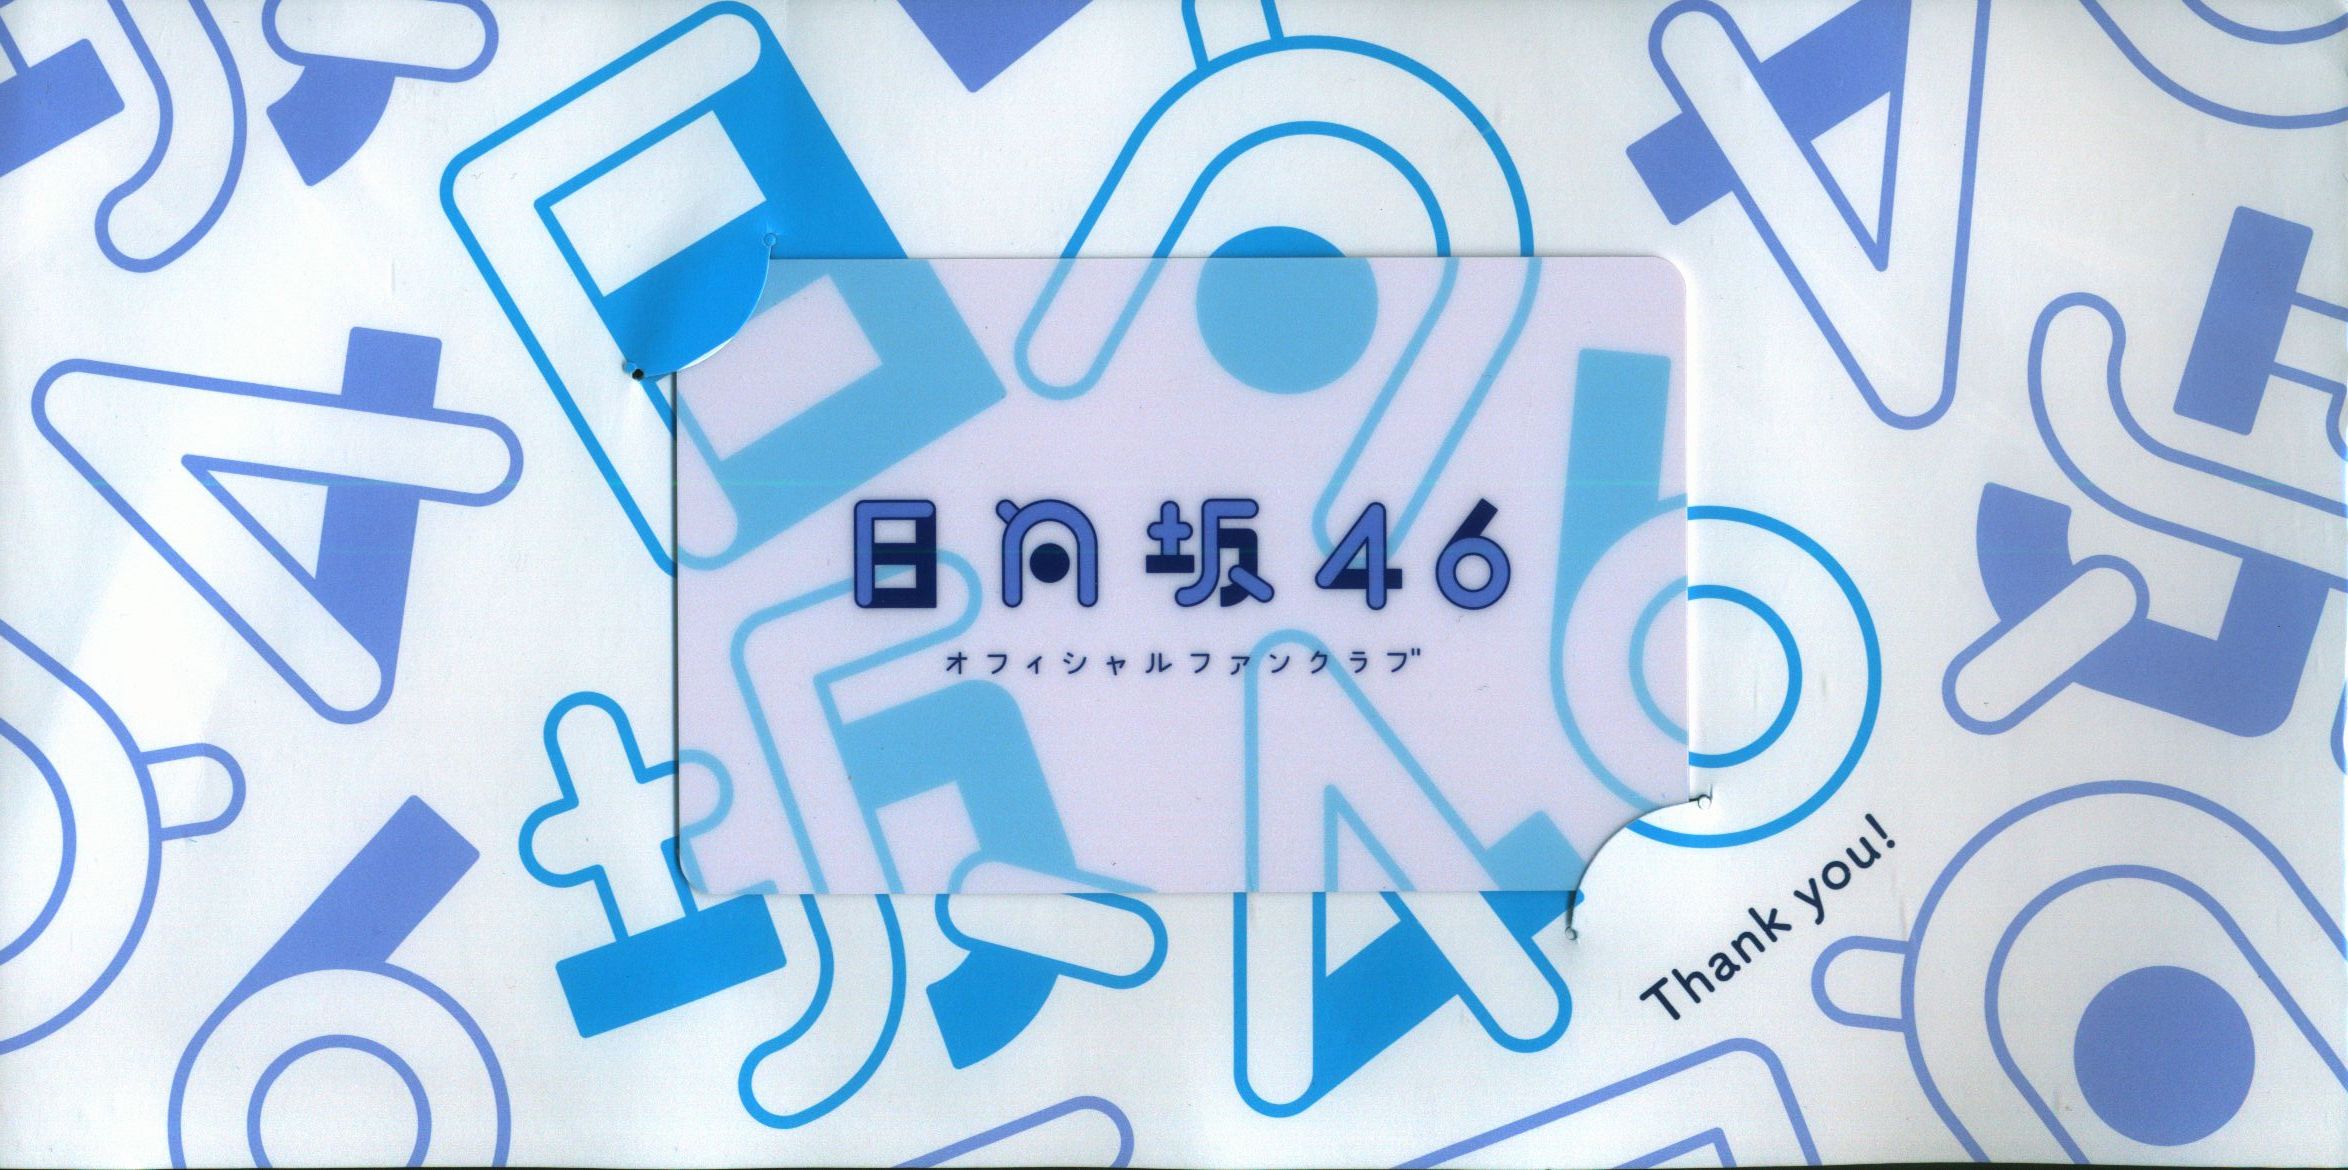 日向坂46 ファンクラブカード(ミス印刷) - タレントグッズ